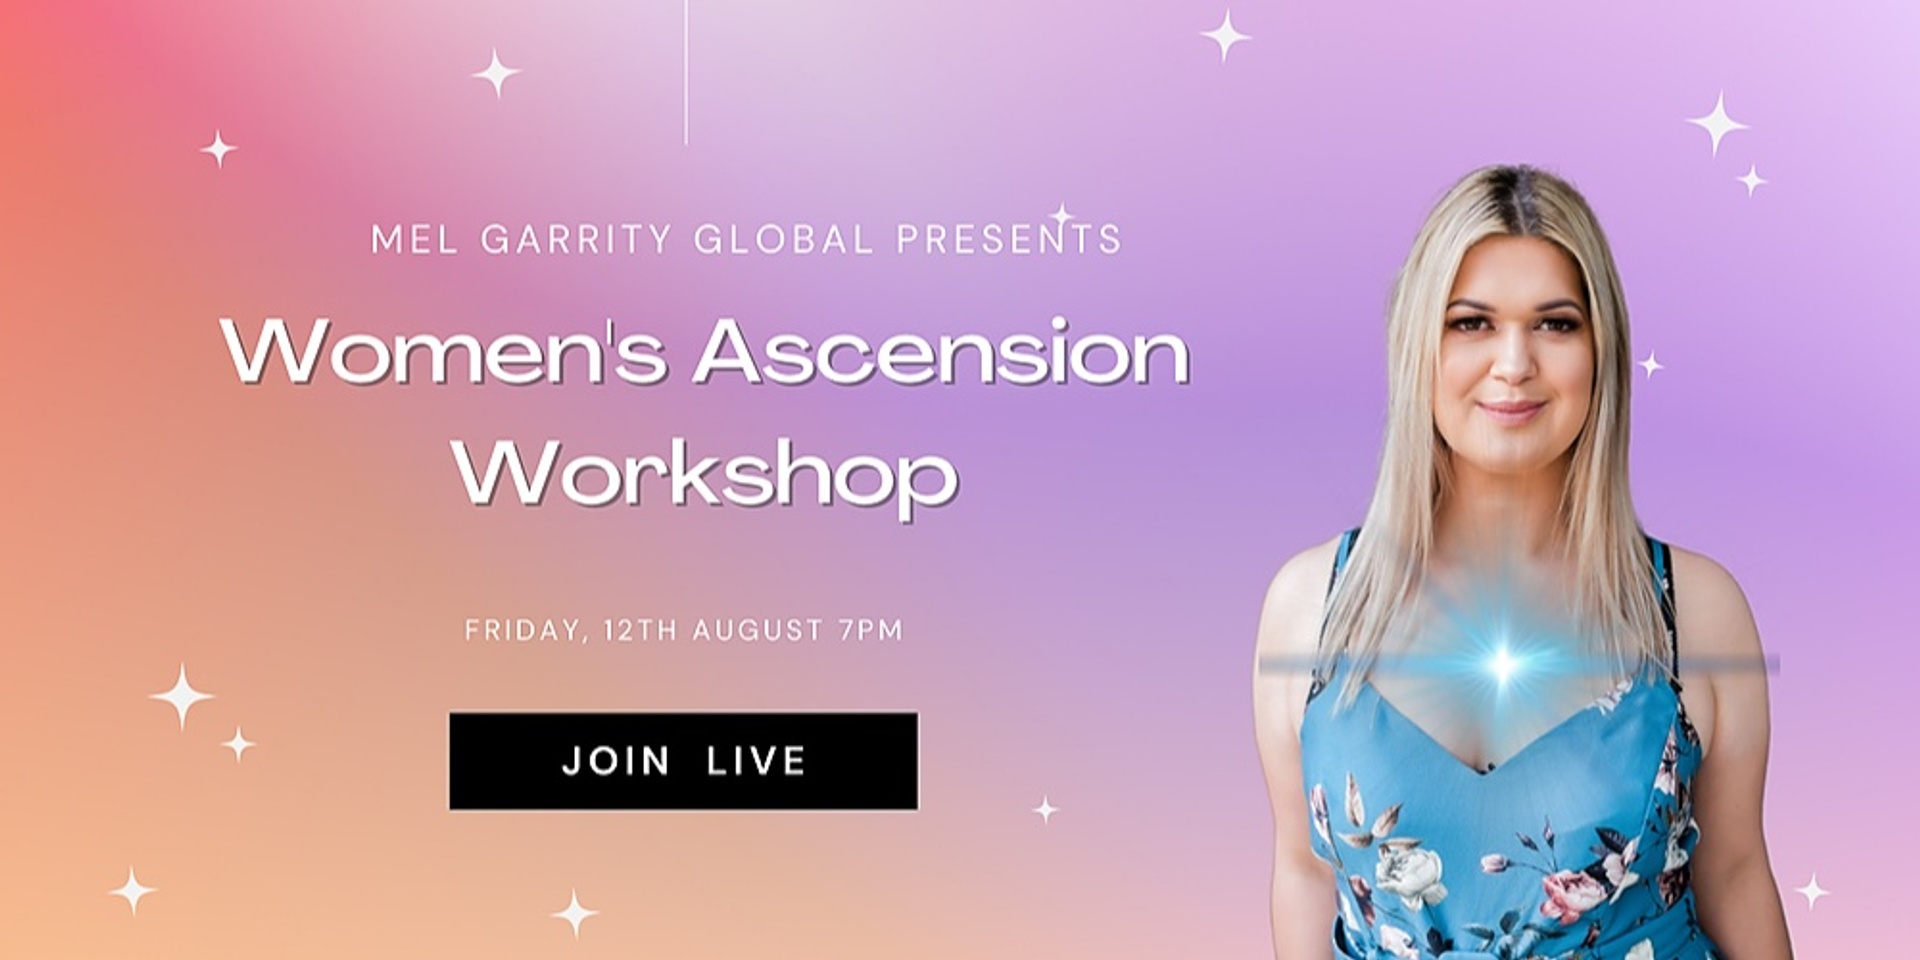 Women's Ascension Workshop